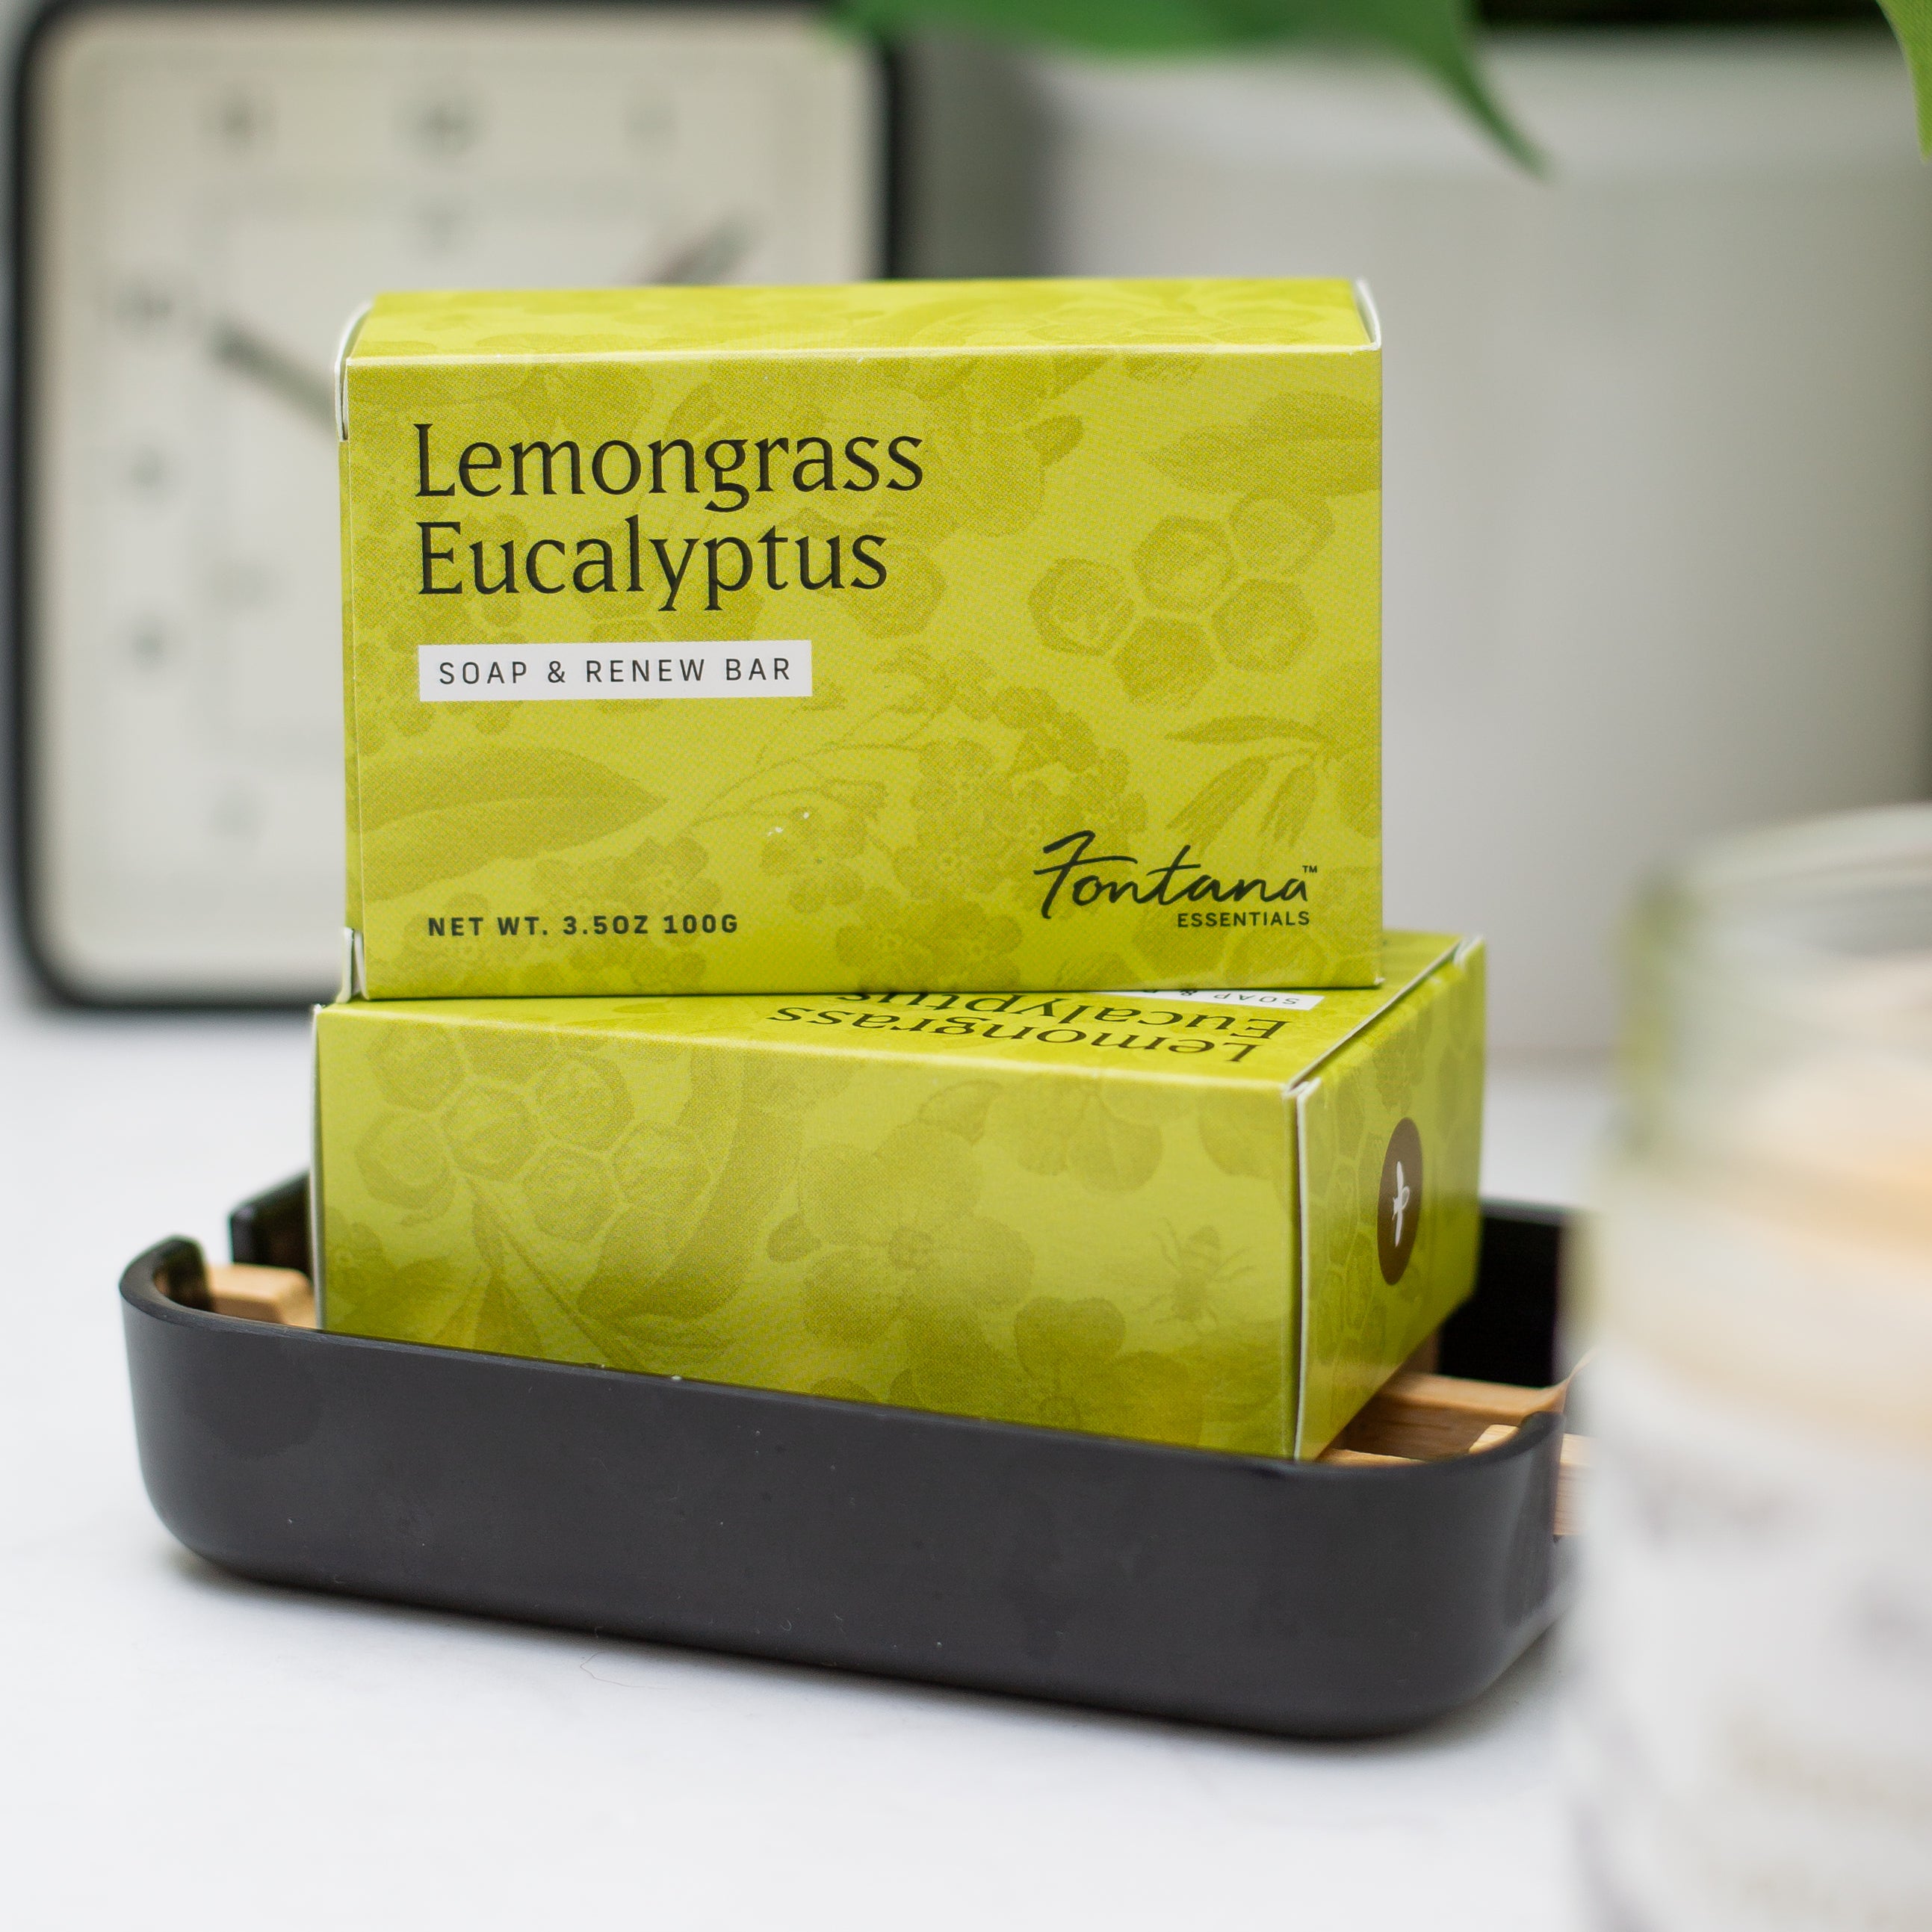 Lemongrass Eucalyptus Triple Milled Bar Soap